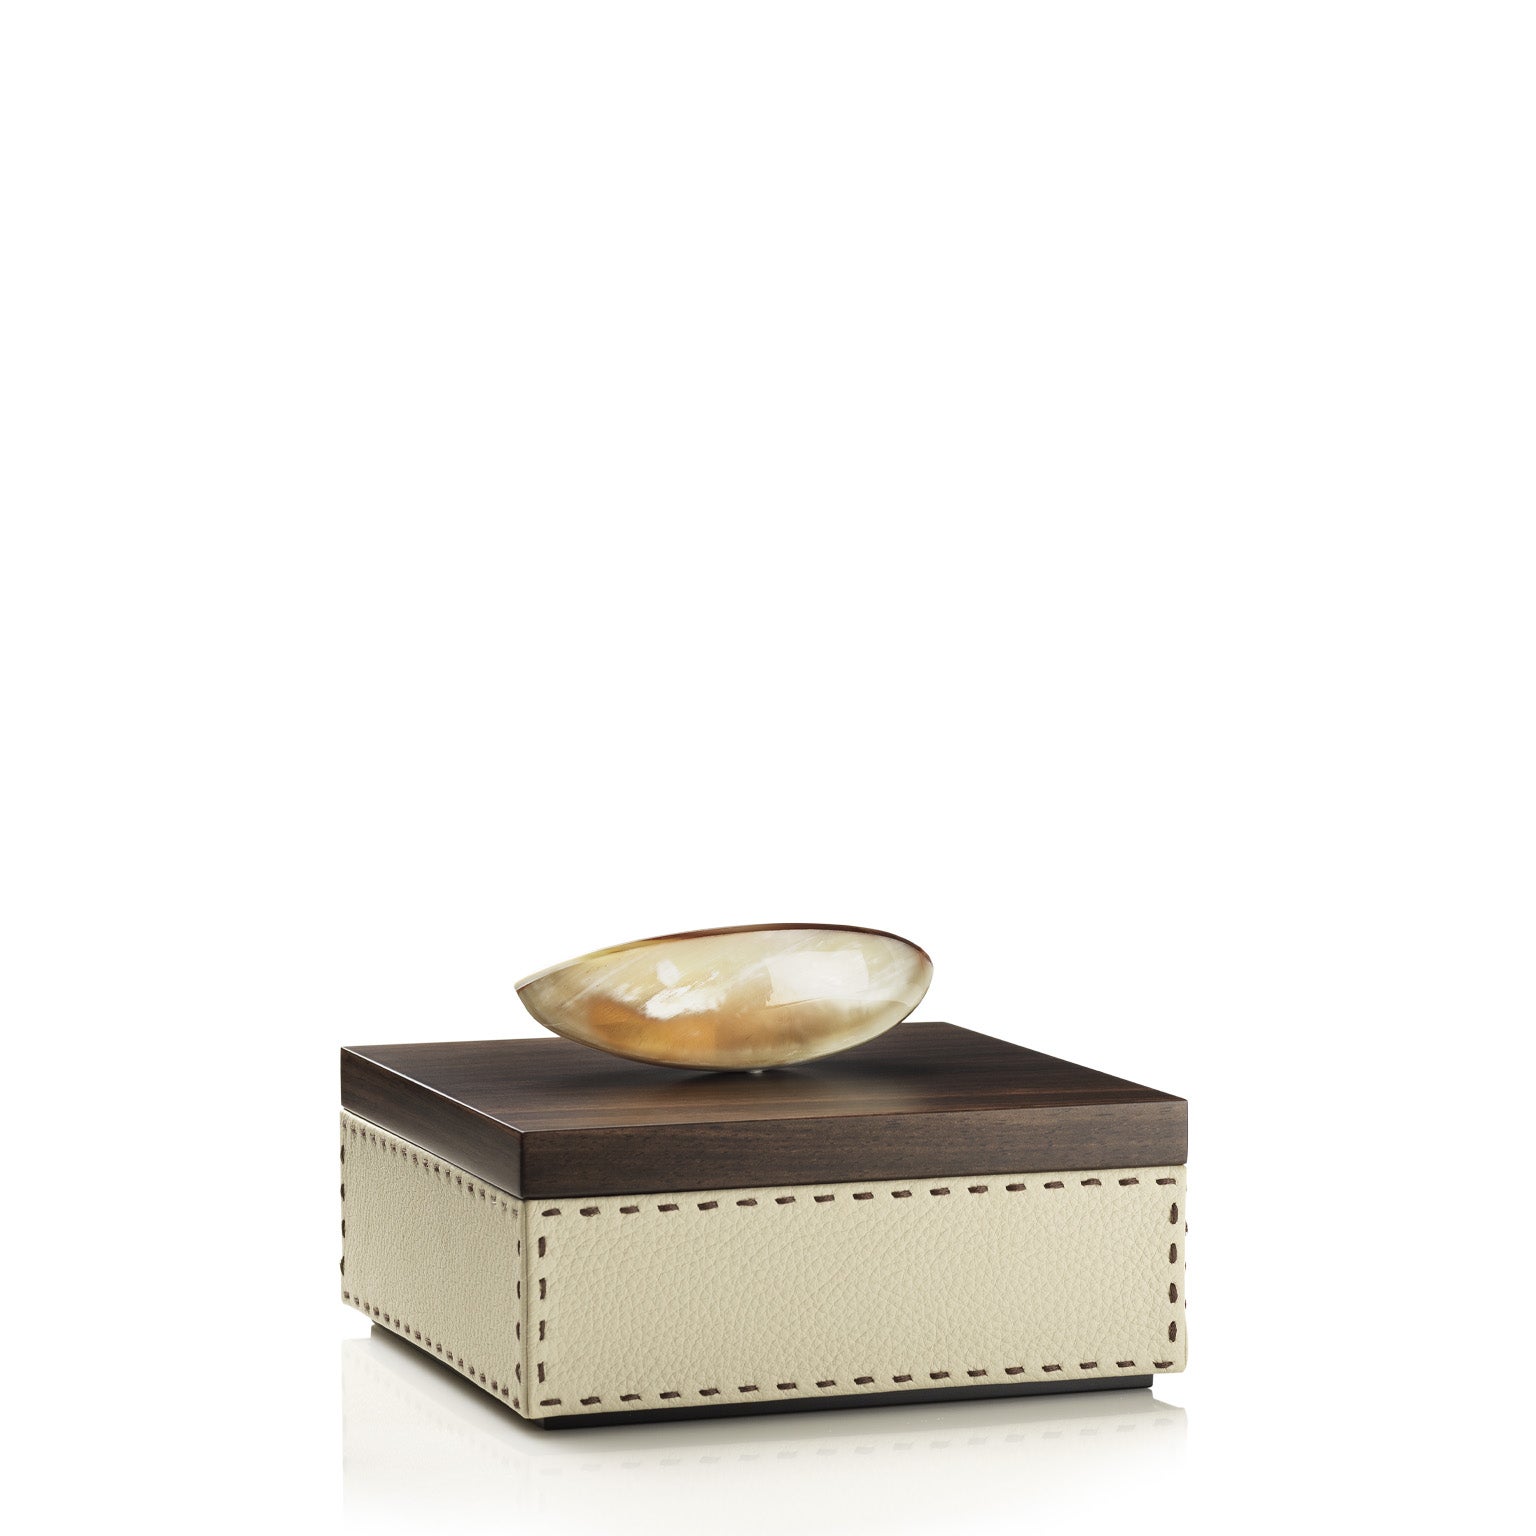 Capricia Square Box in Pebbled Leather with Handle in Corno Italiano, Mod. 4471